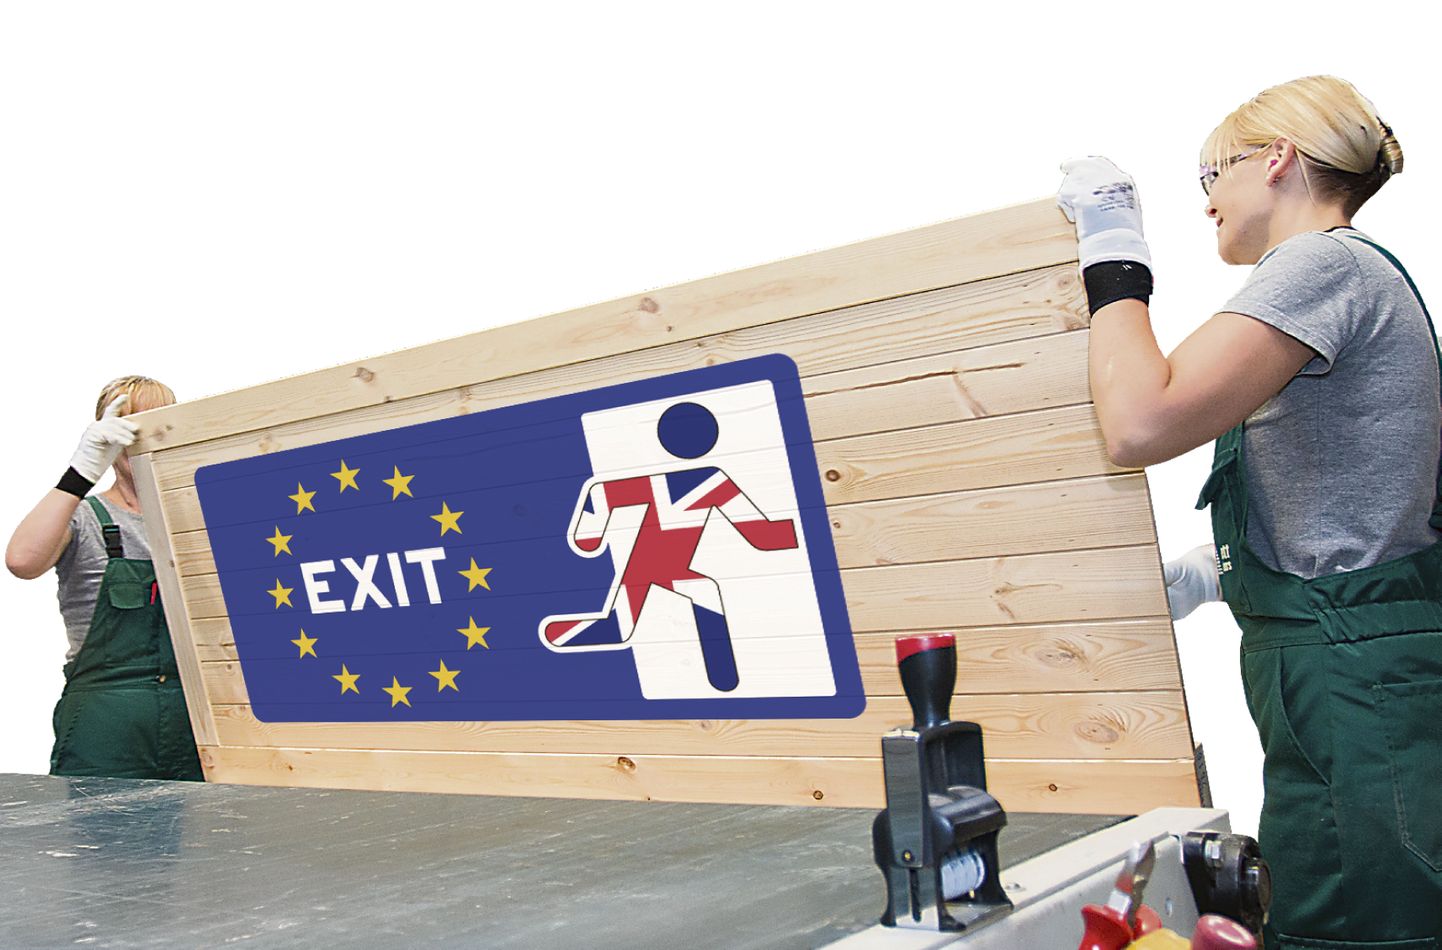 Valdavalt briti kodanikele kuuluv Viljandi ettevõte Nett jätkab täispuidust uste tootmist Ühendkuningriigi turu tarvis hoolimata sellest, et selles saareriigis nädala eest toimunud referendum tõi Euroopa majandusse ohtralt ebakindlust.